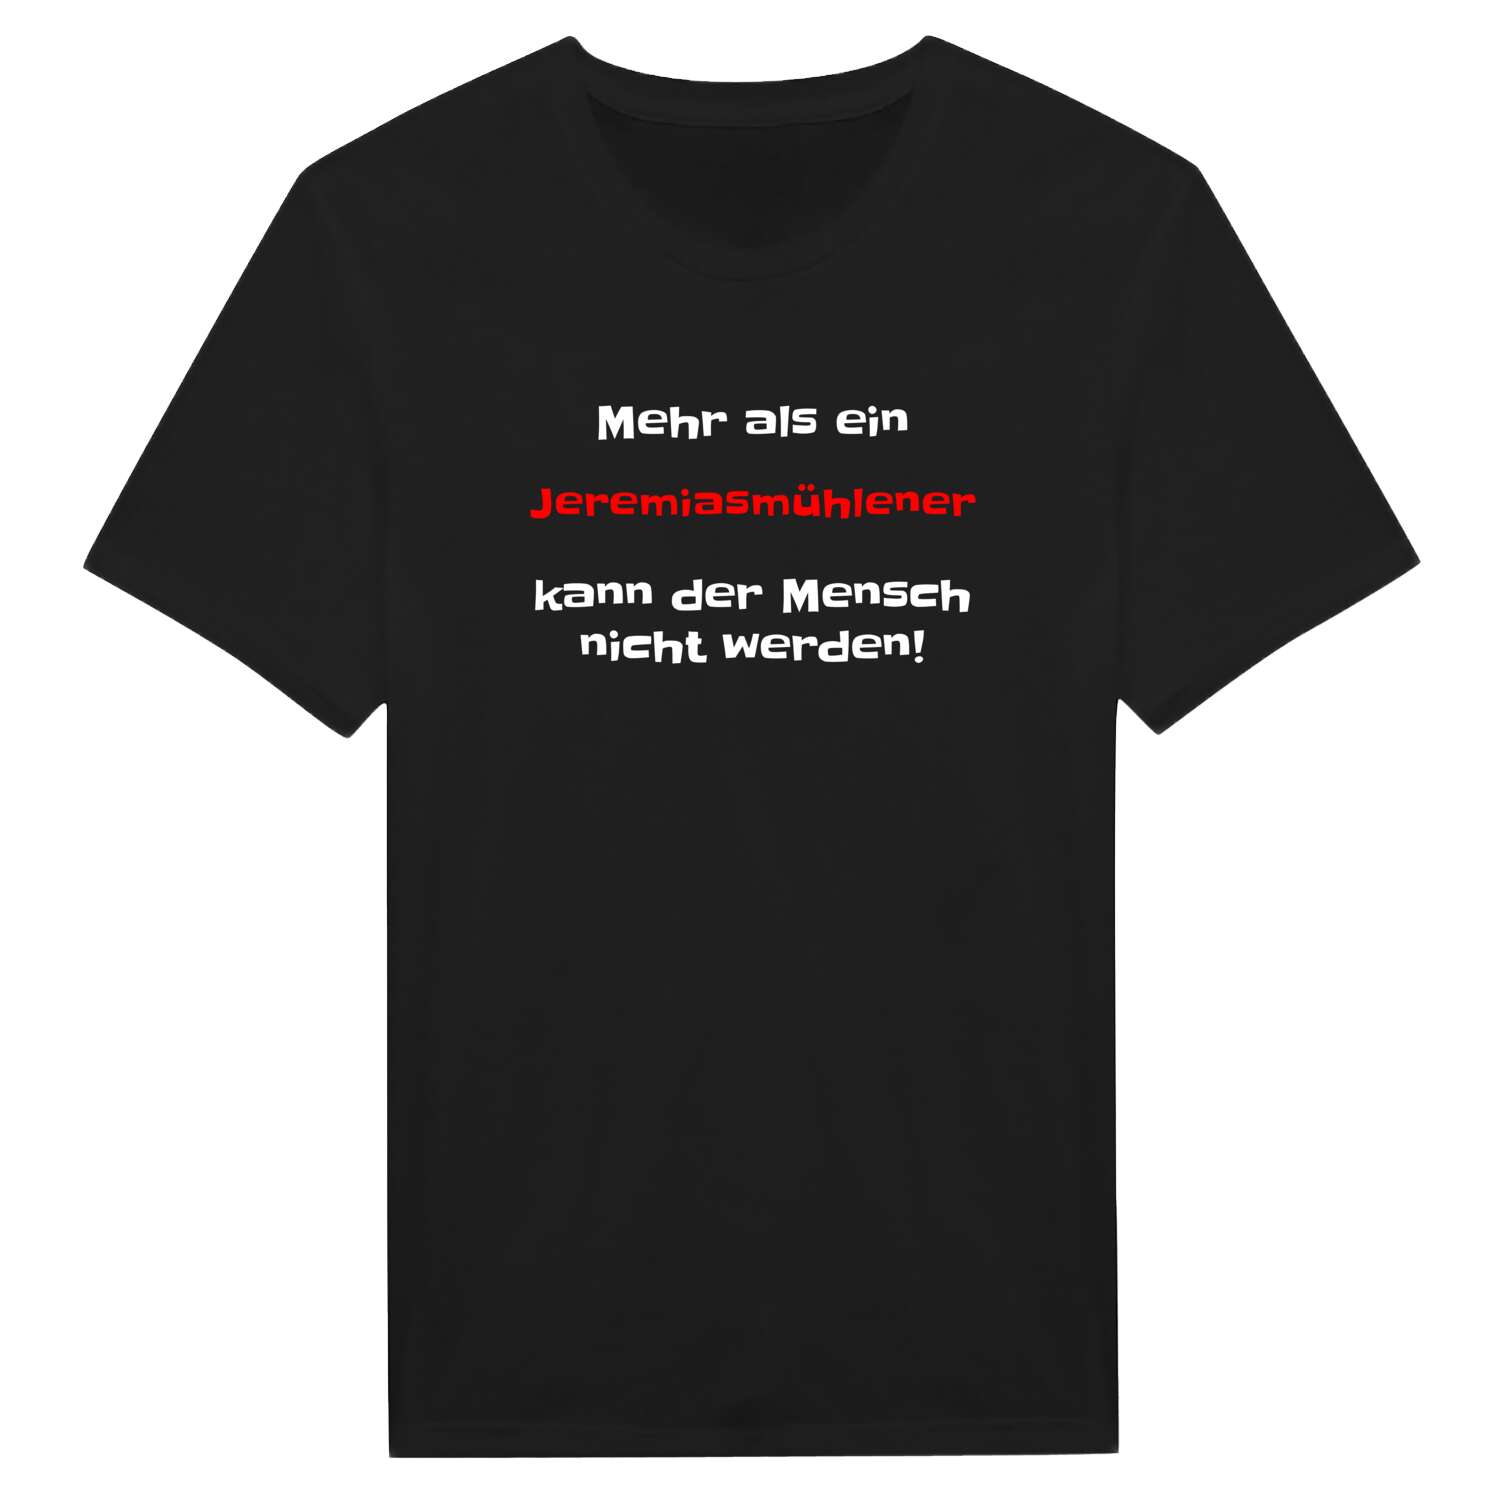 Jeremiasmühle T-Shirt »Mehr als ein«